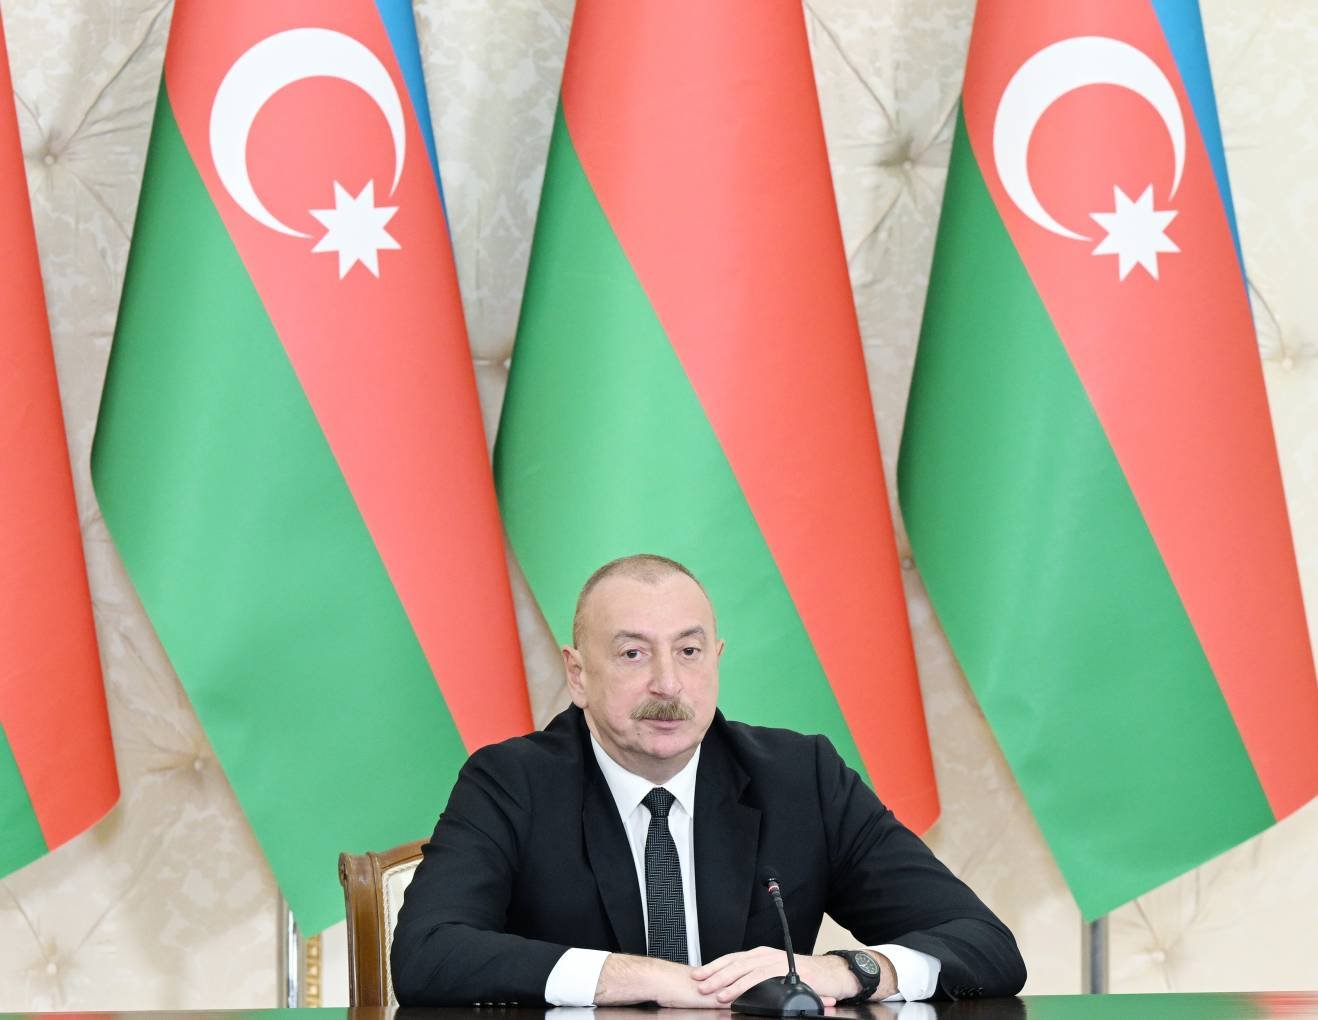 Prezident: Azərbaycanla Belarus arasında kreativ tərəfdaşlığı çox yüksək qiymətləndiririk